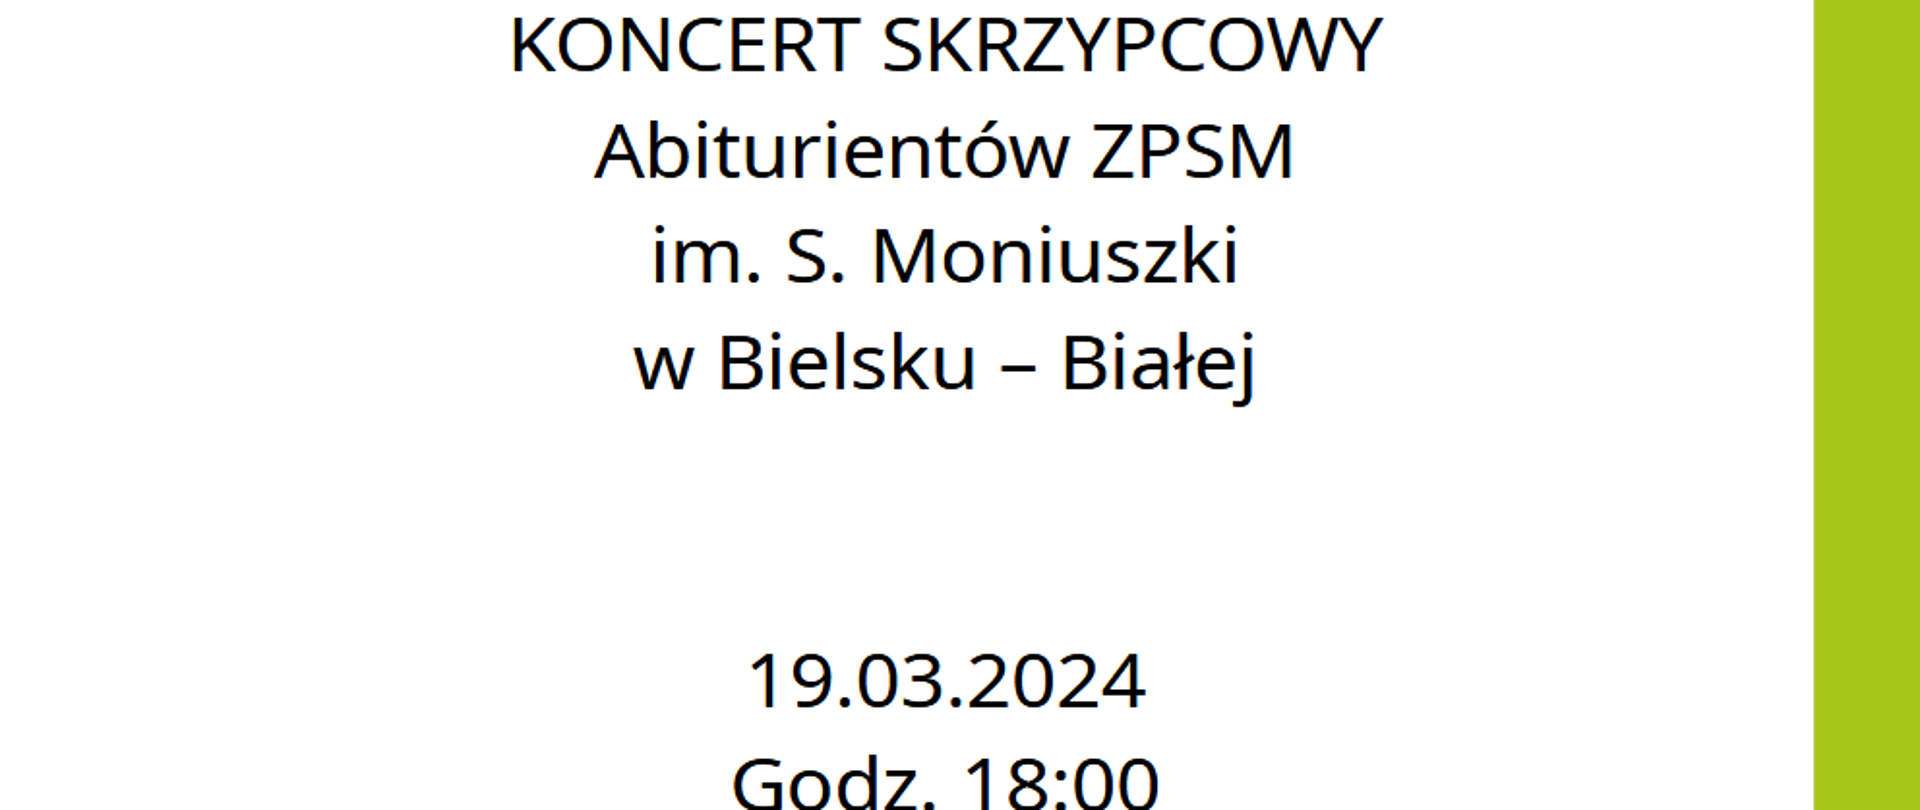 Zapraszamy na koncert skrzypcowy abiturientów ZPSM im. S. Moniuszki. 19.03.2024, godz. 18:00